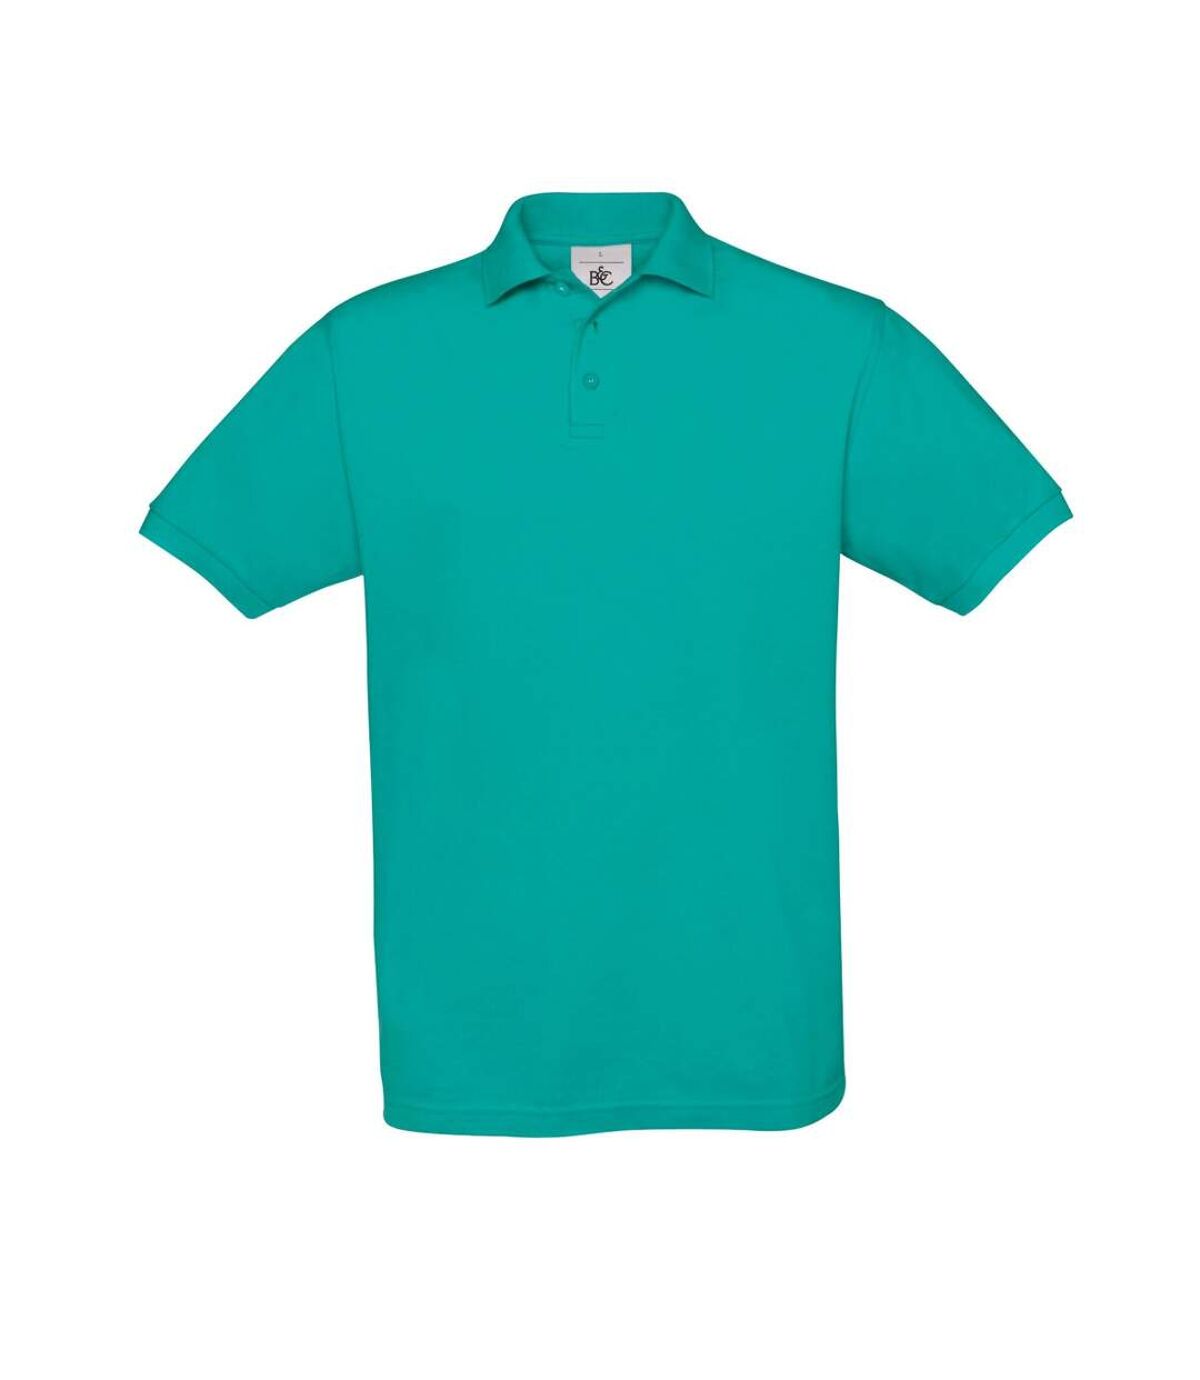 B&C - Polo à manches courtes SAFRAN - Homme (Turquoise) - UTBC103